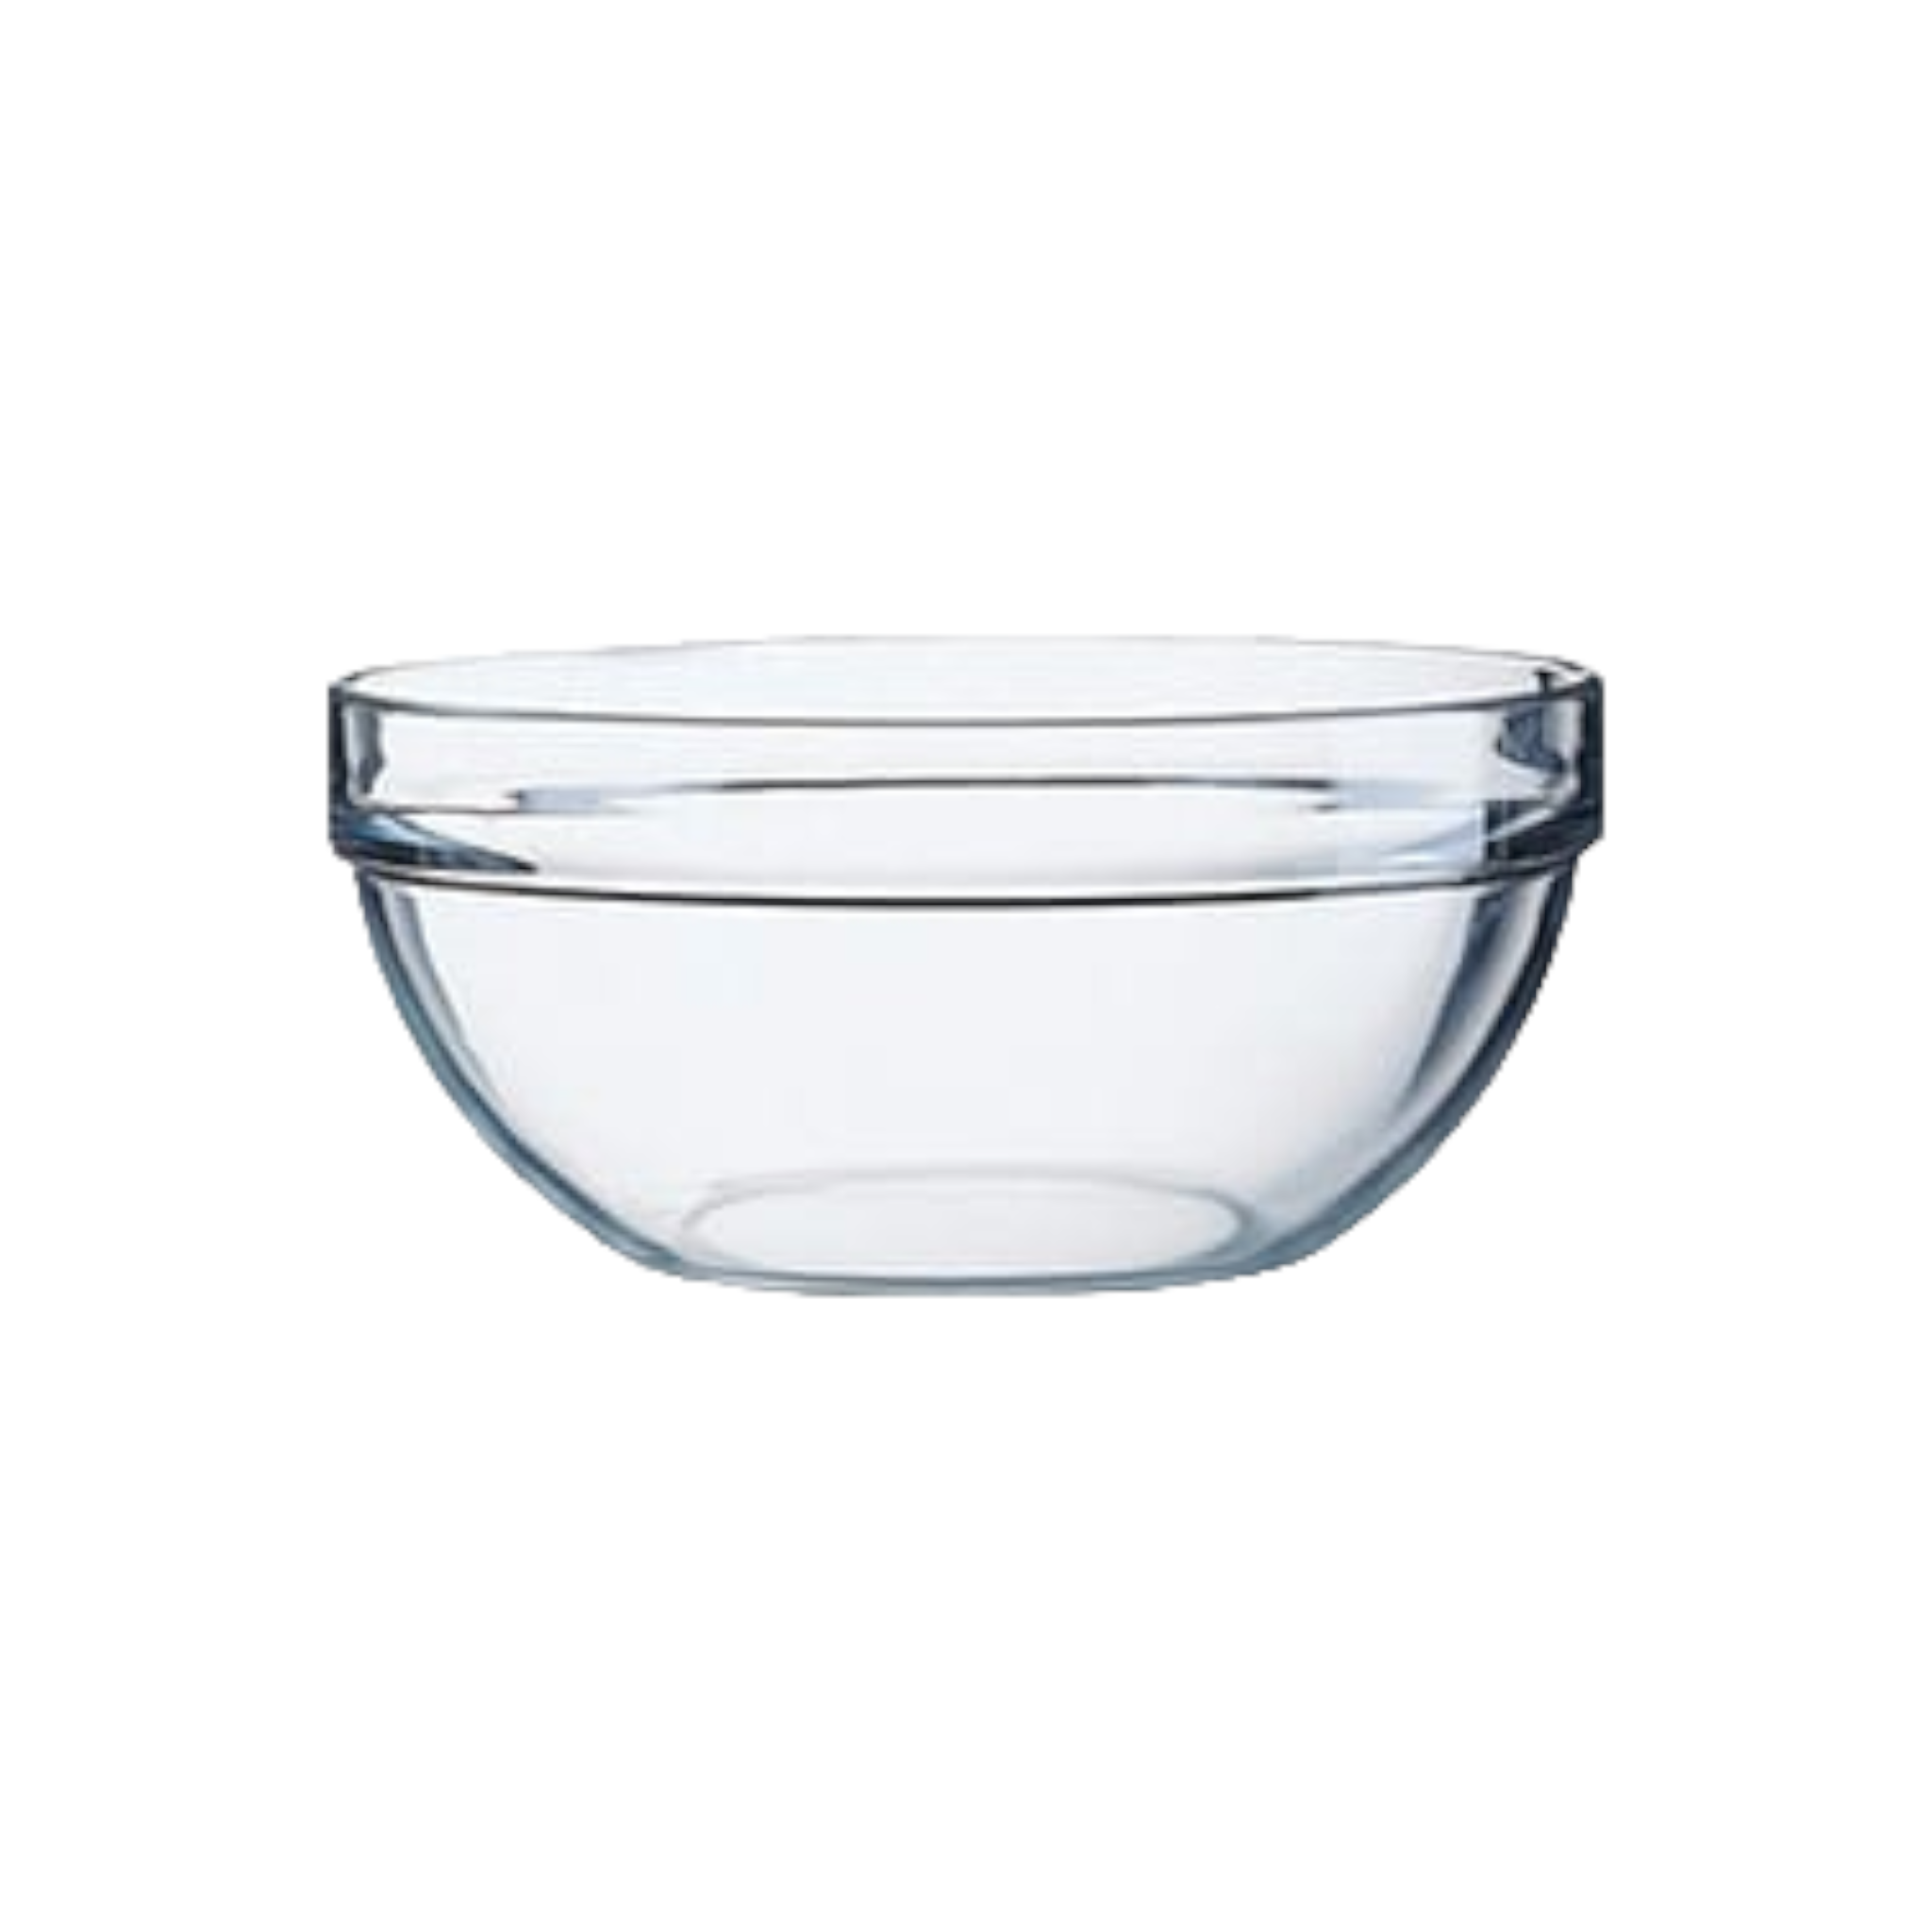 Regent Tempered Glass Bowl 1.1L Stackable Bowl 27234